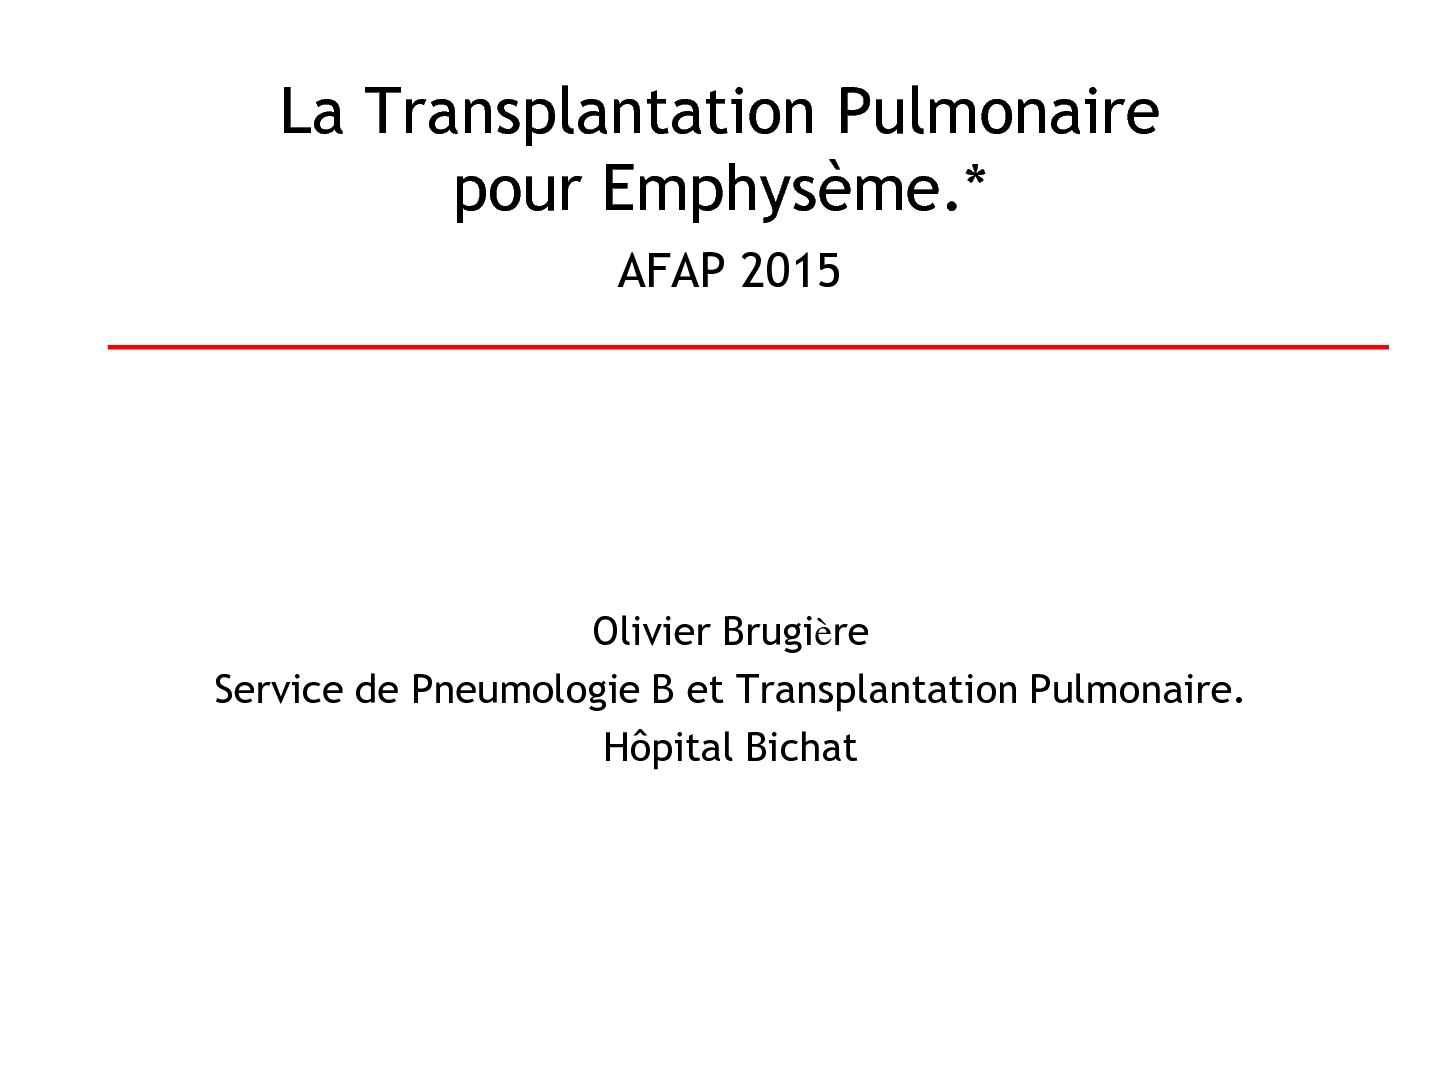 La Transplantation Pulmonaire pour Emphysème. Olivier Brugière